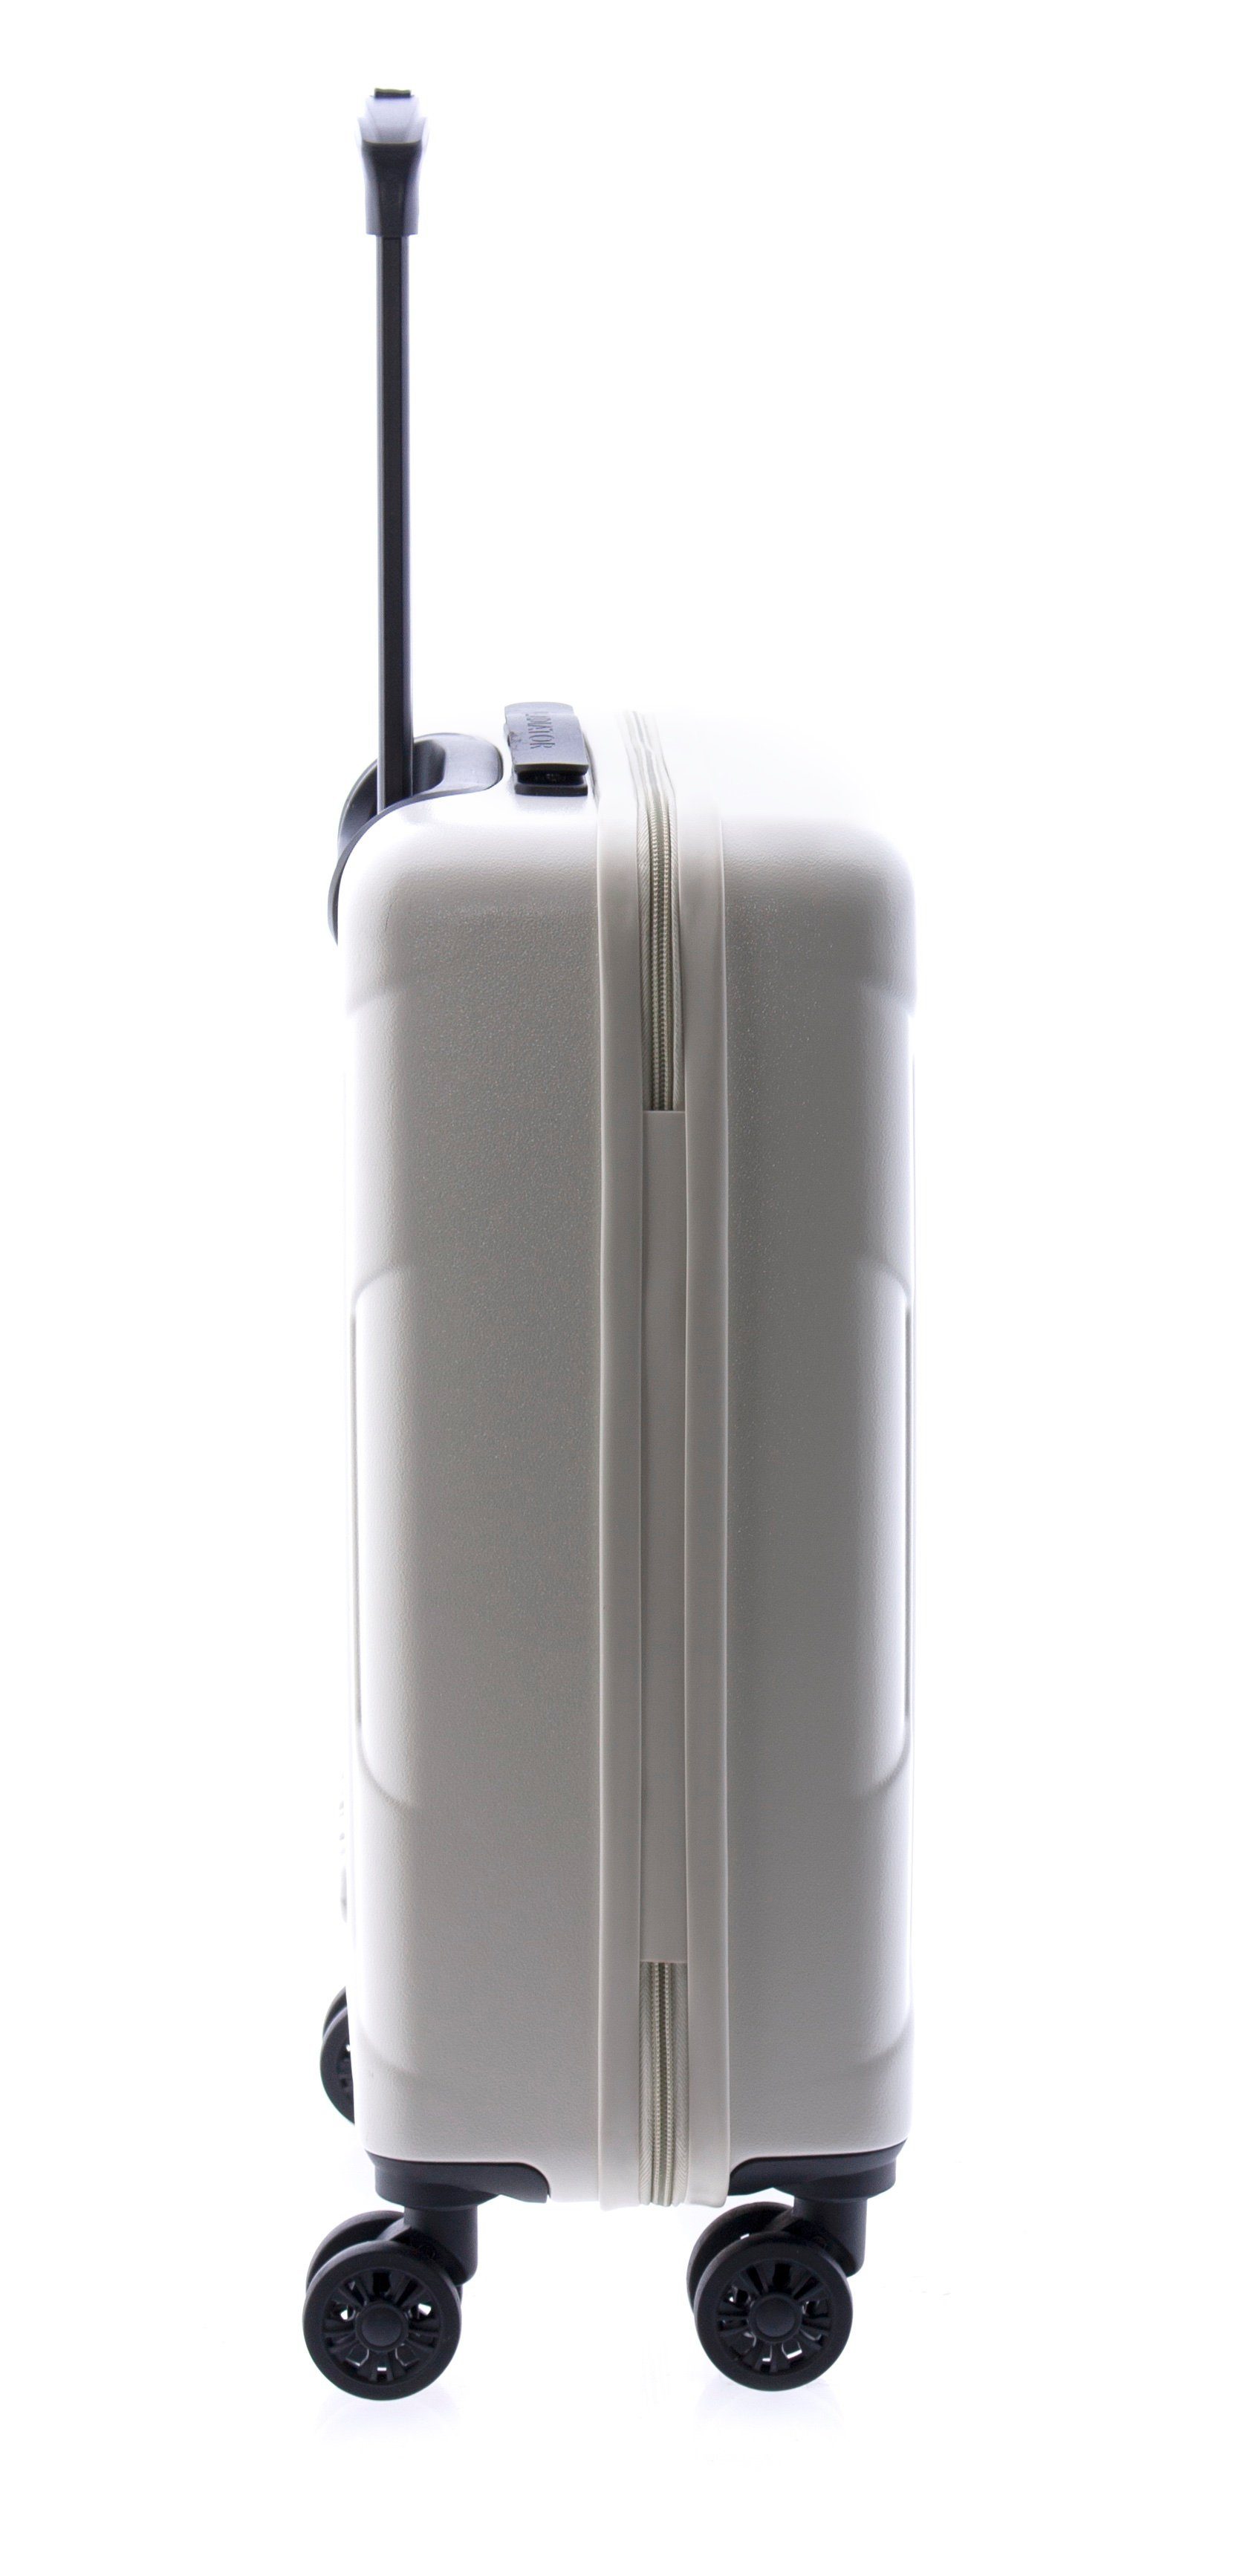 Koffer 3,3kg, Farben 4 cm, 4 TSA, 68 Hartschalen-Trolley - GLADIATOR M weiss Rollen